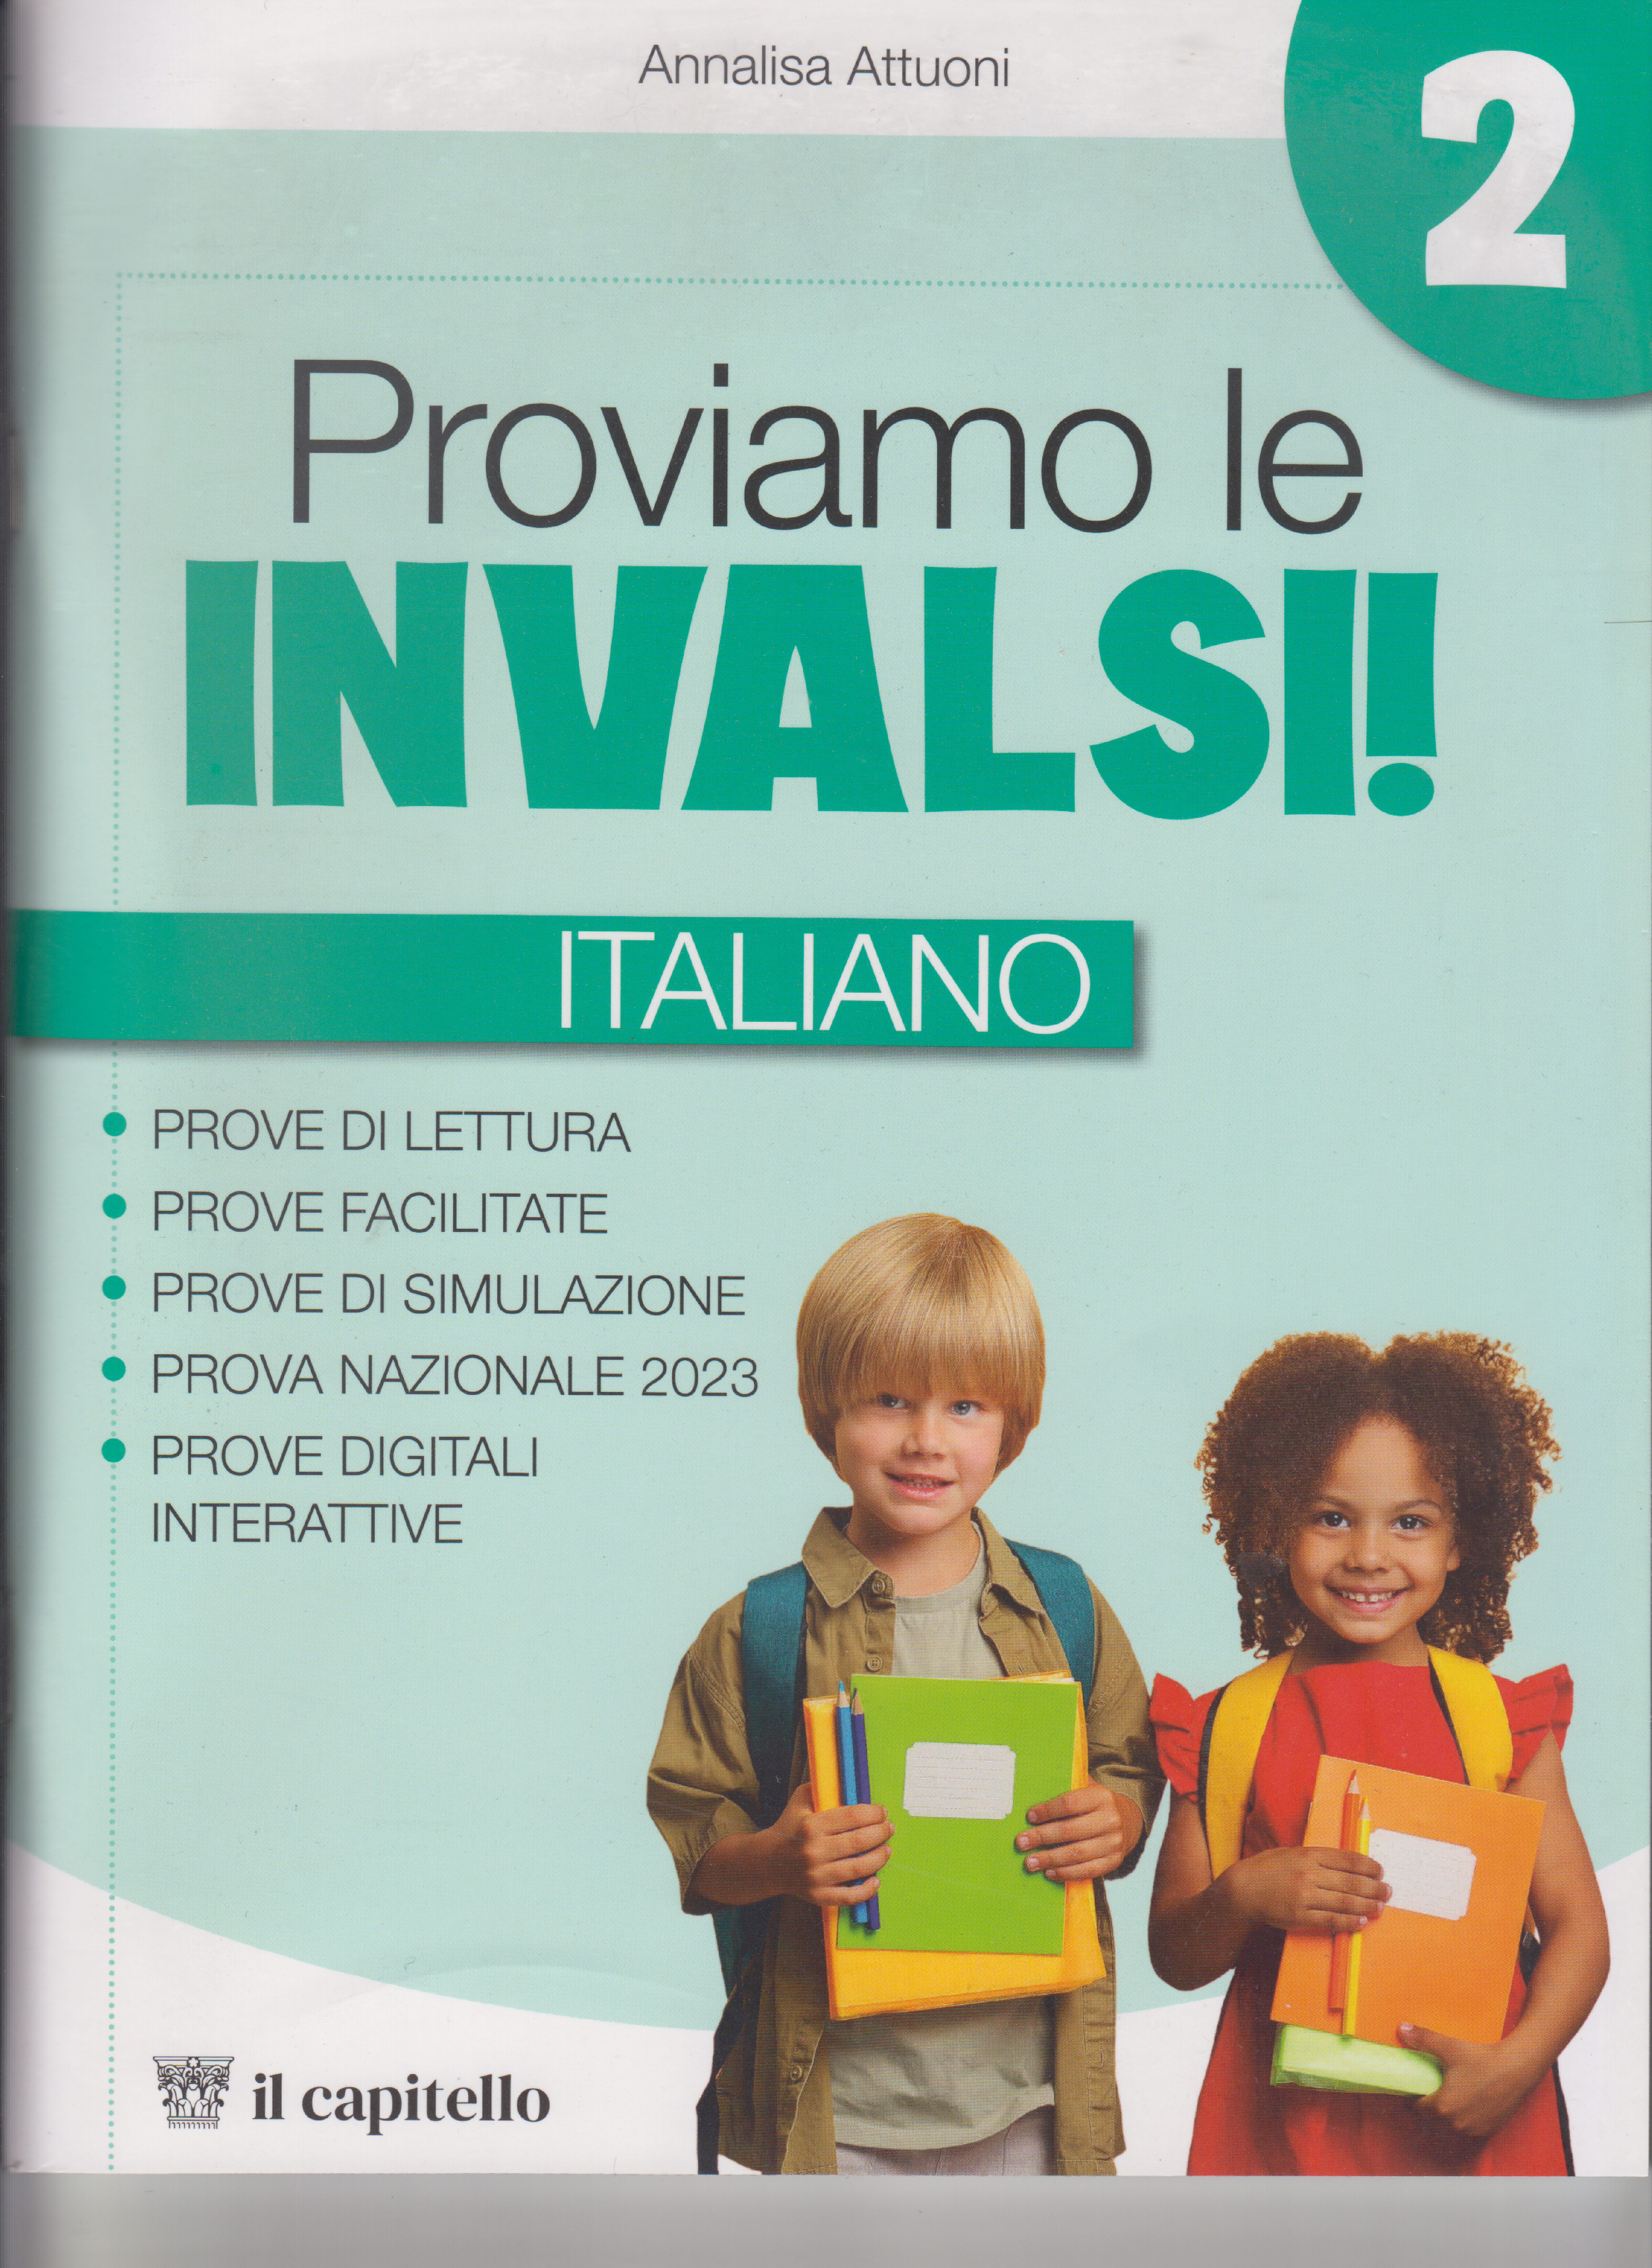 PROVIAMO LE INVALSI ! ITALIANO CL 2 – Mondo Docenti